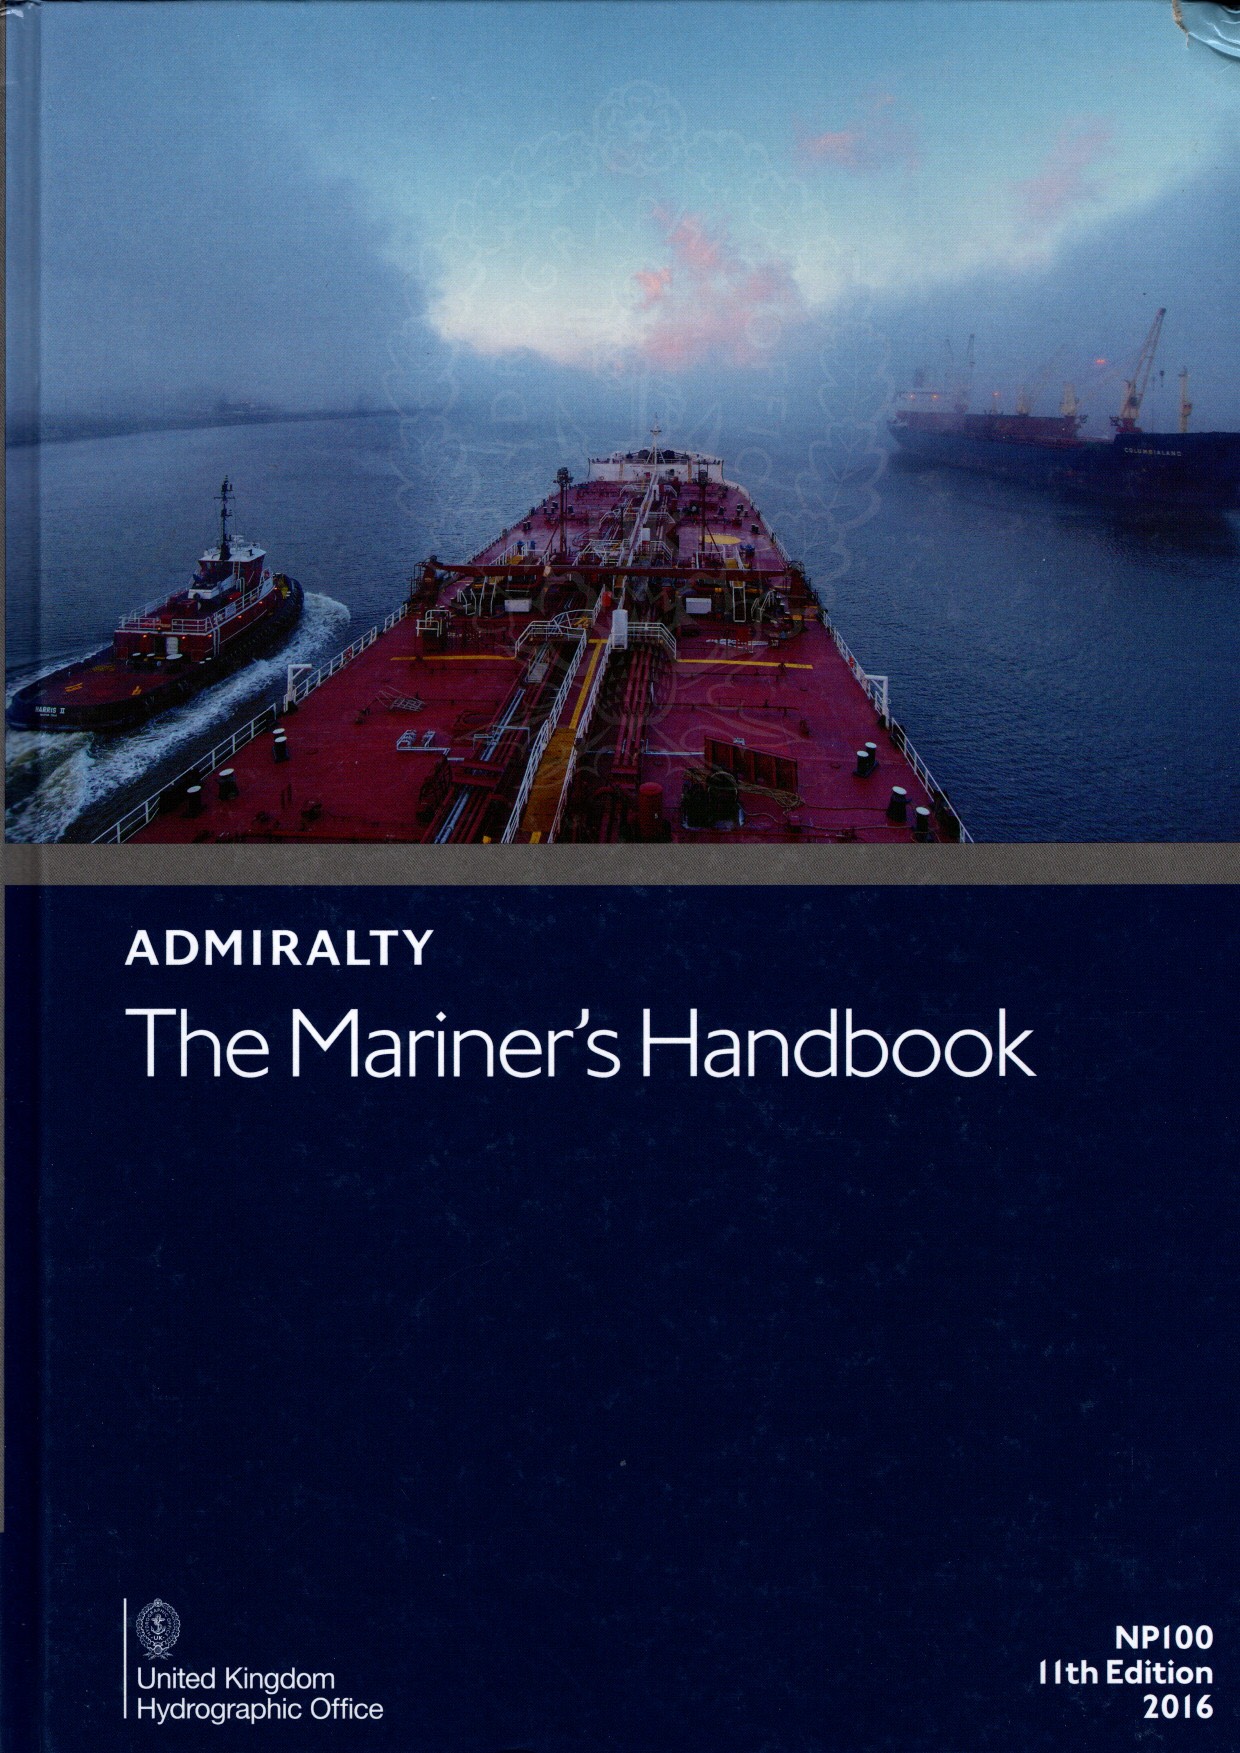 Mariner's handbook - nuove ed. 2016